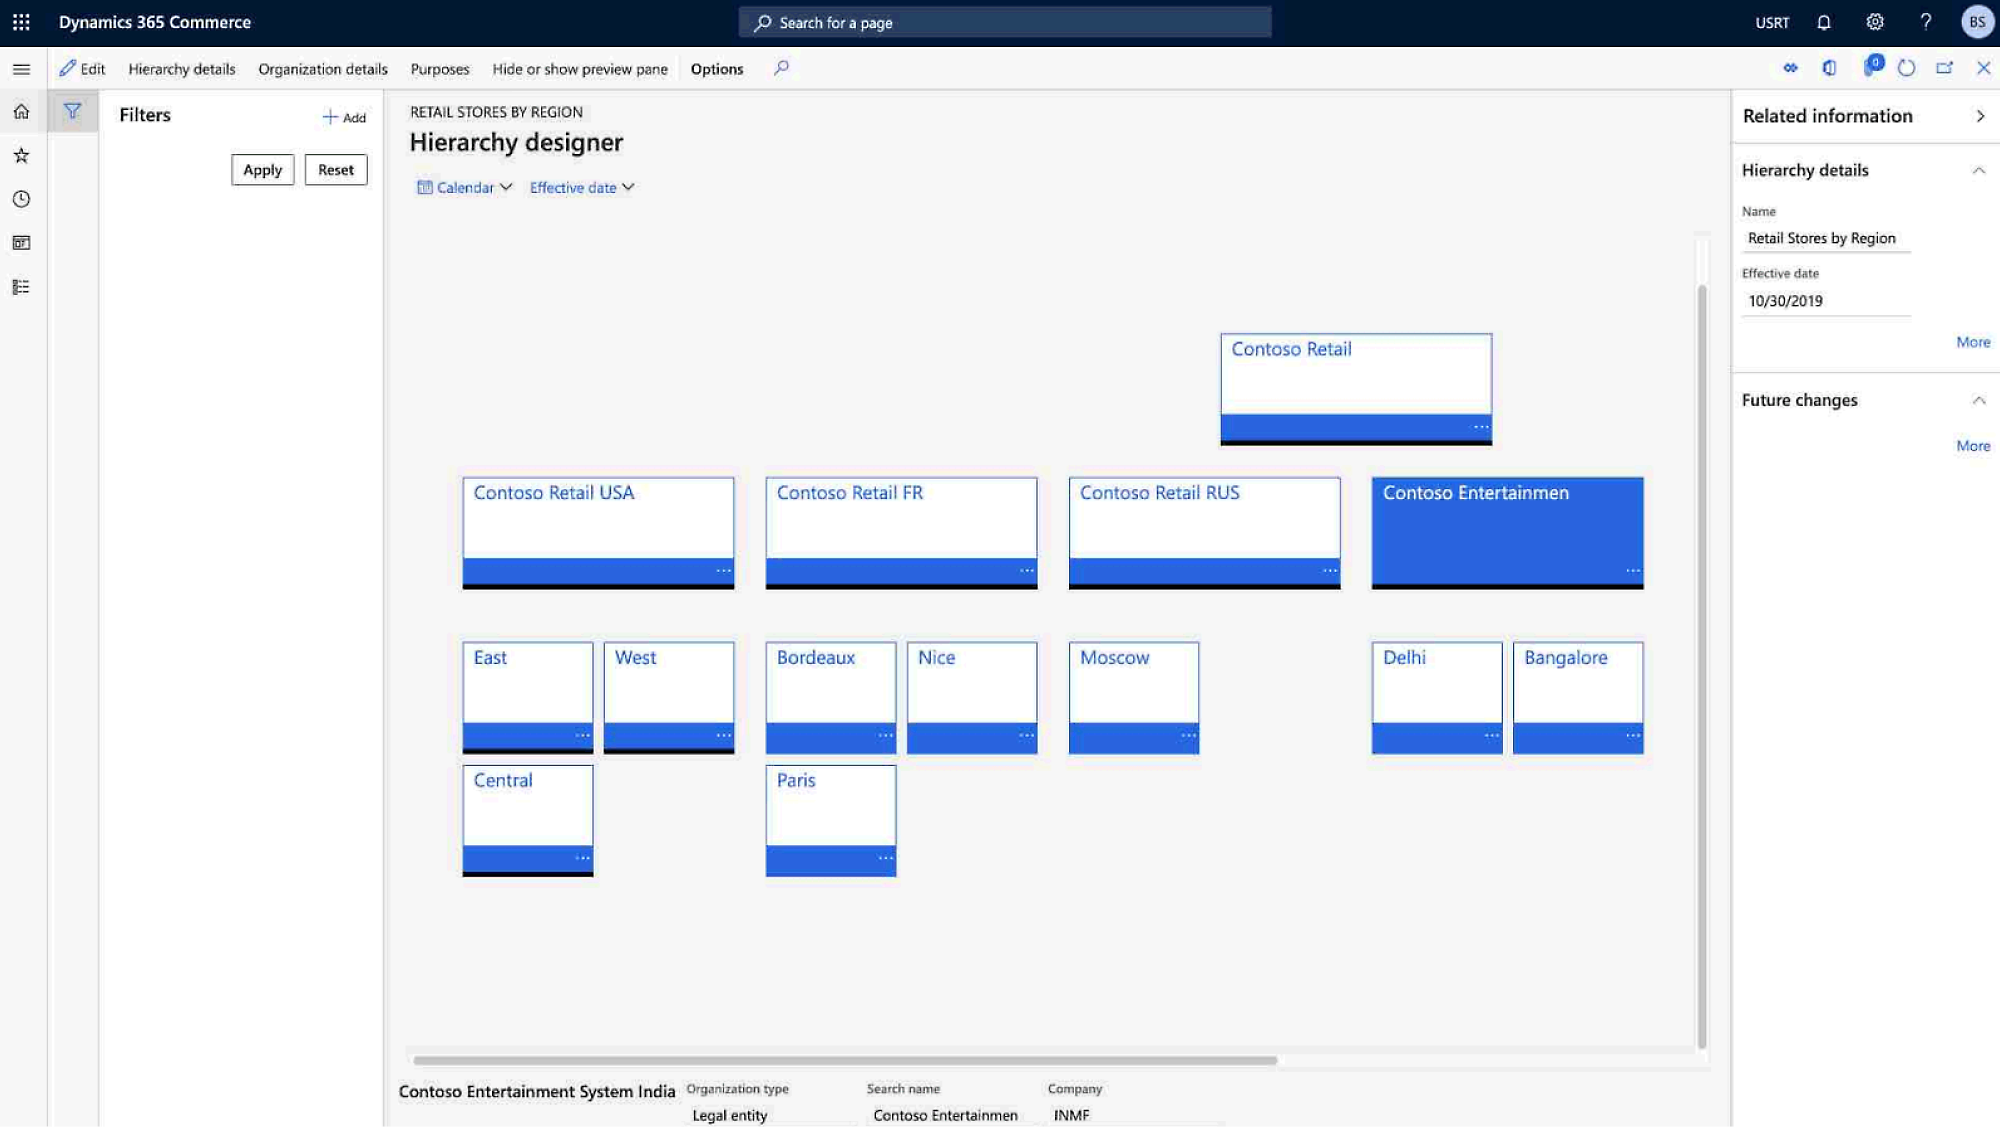 Recorte de pantalla de Dynamics 365 Commerce en el que se muestran los detalles de la jerarquía de la organización con varias tiendas minoristas por región.